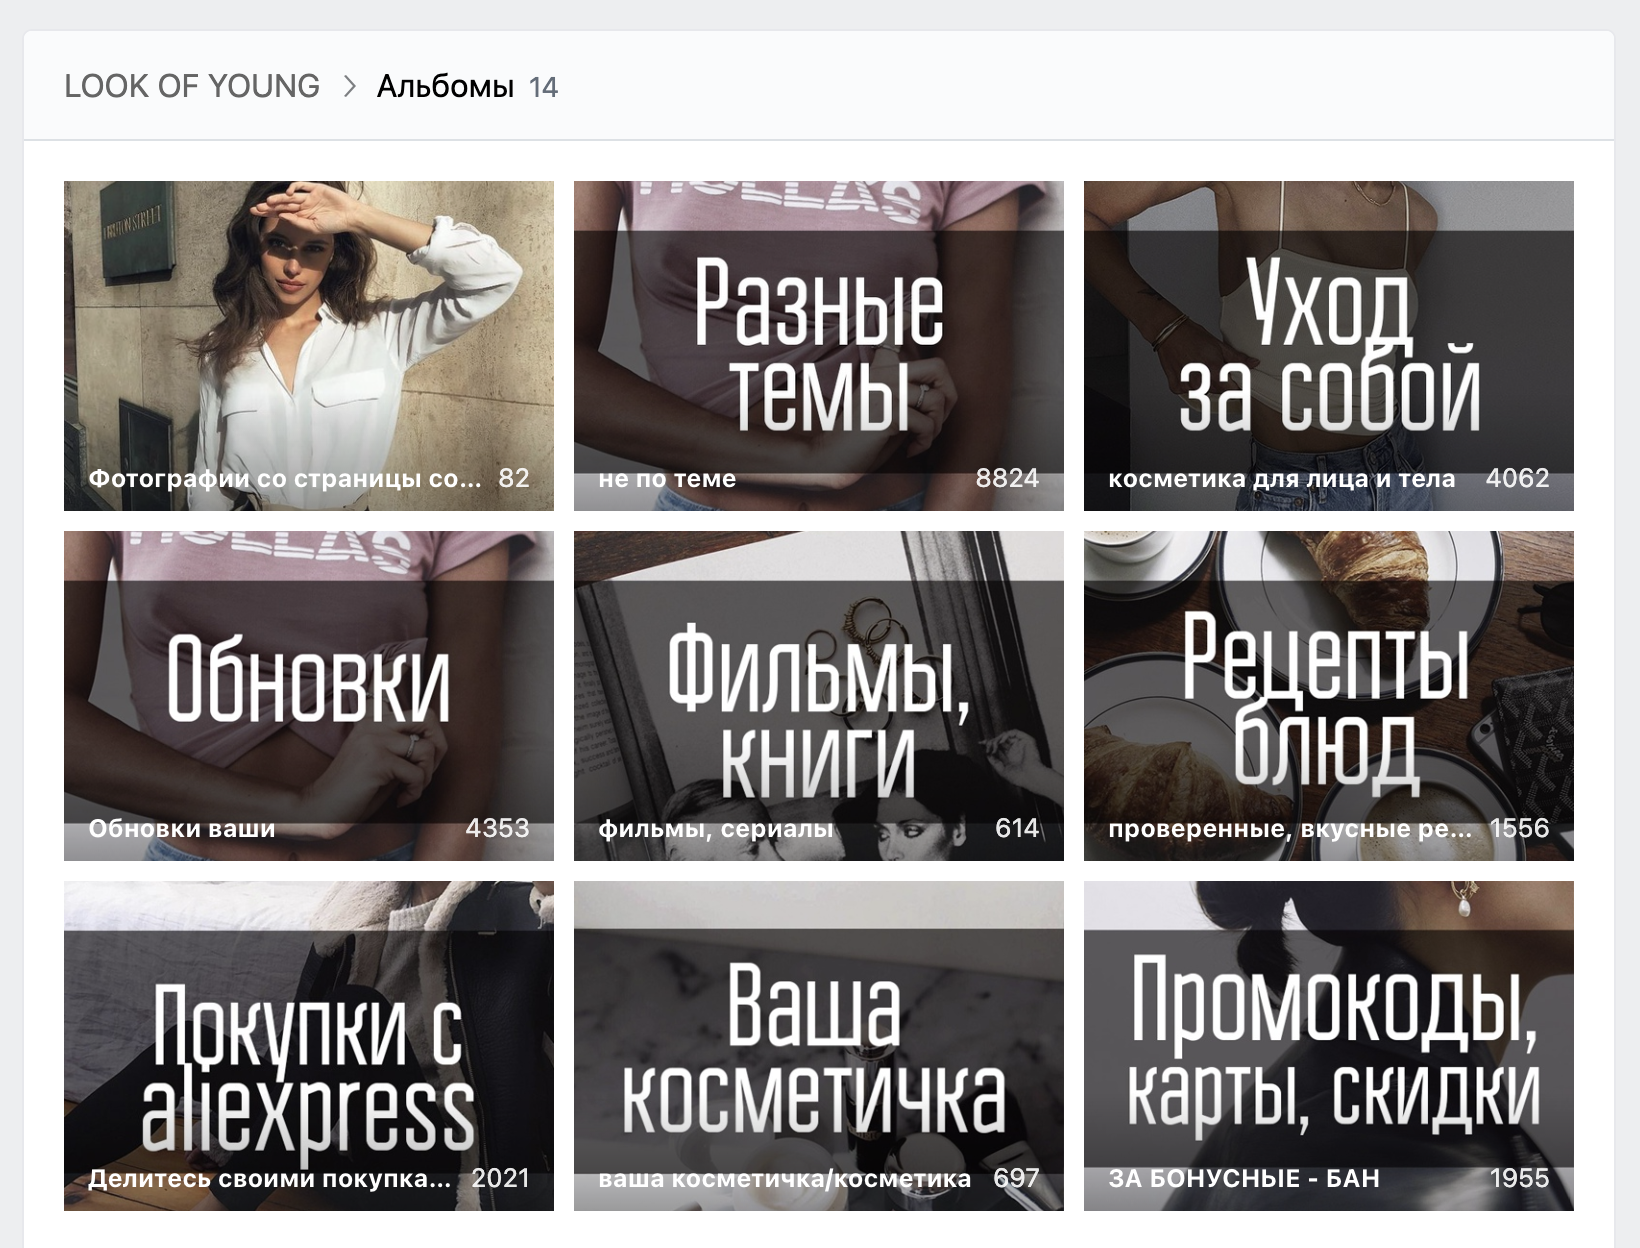 А в сообществе Look of Young во «Вконтакте» альбомы оформлены в едином стиле и систематизированы. Это повод считать его составным произведением